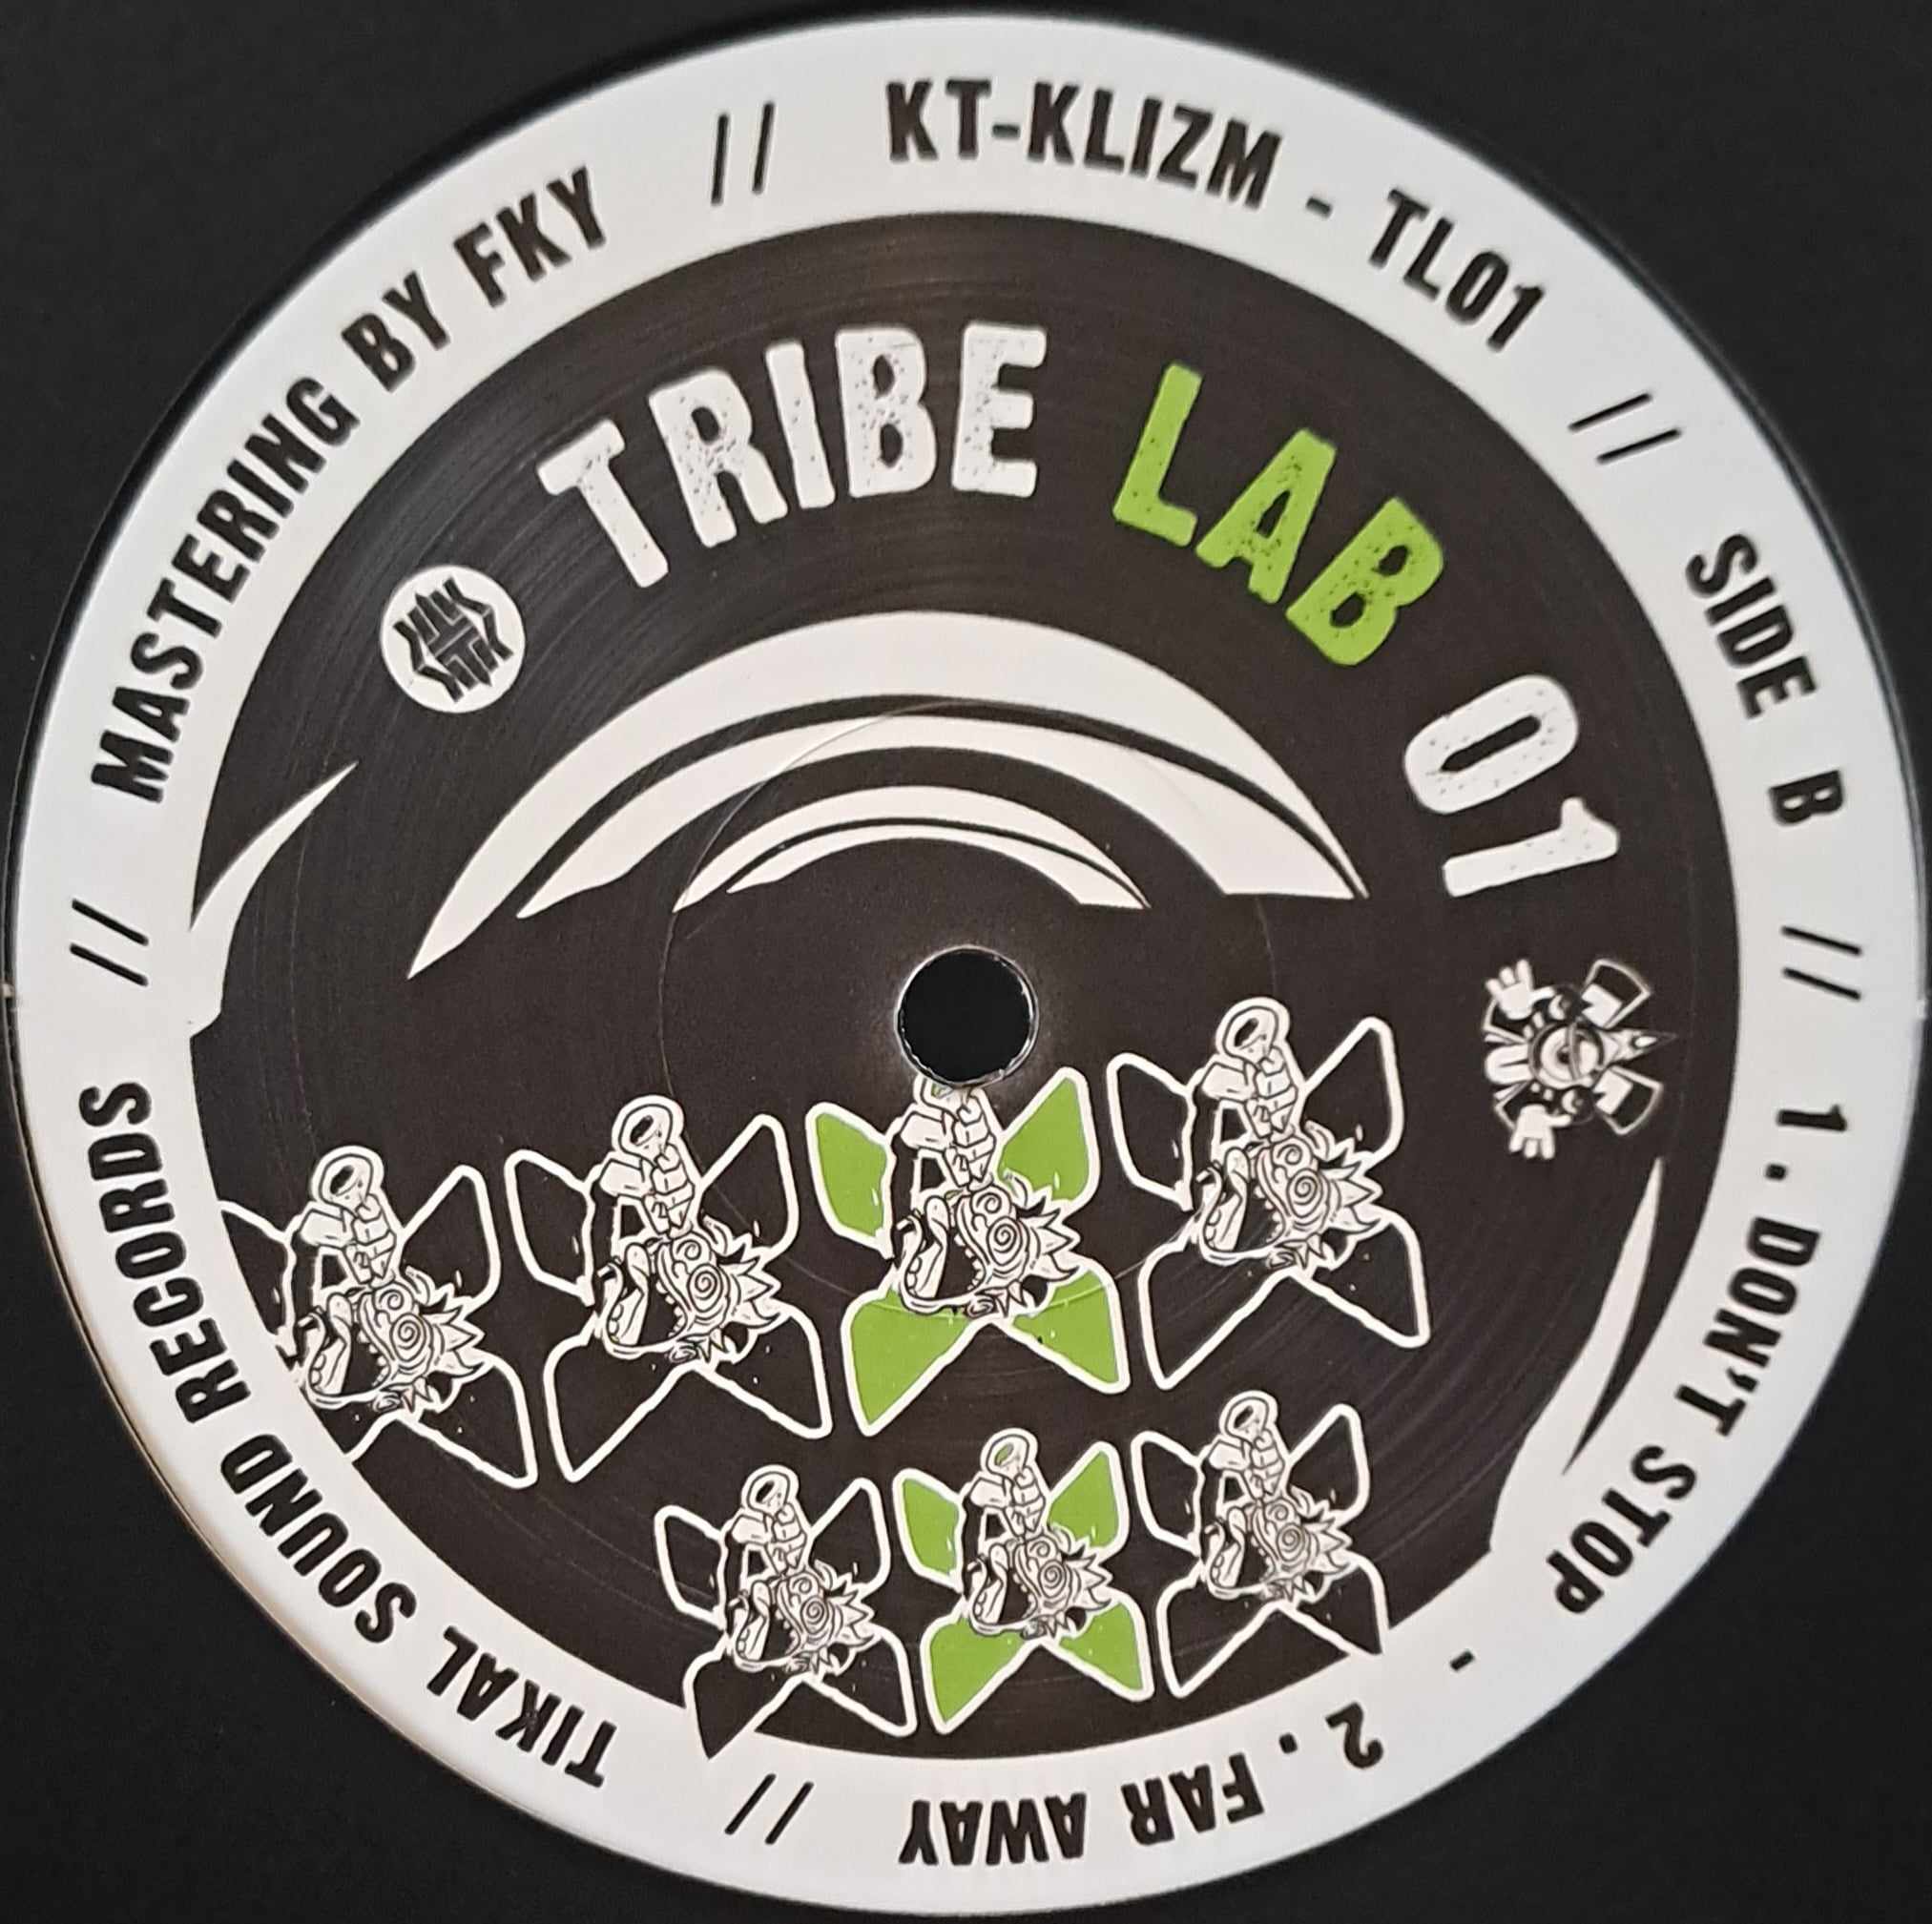 Tribe Lab 01 (toute dernière copie en stock) - vinyle freetekno